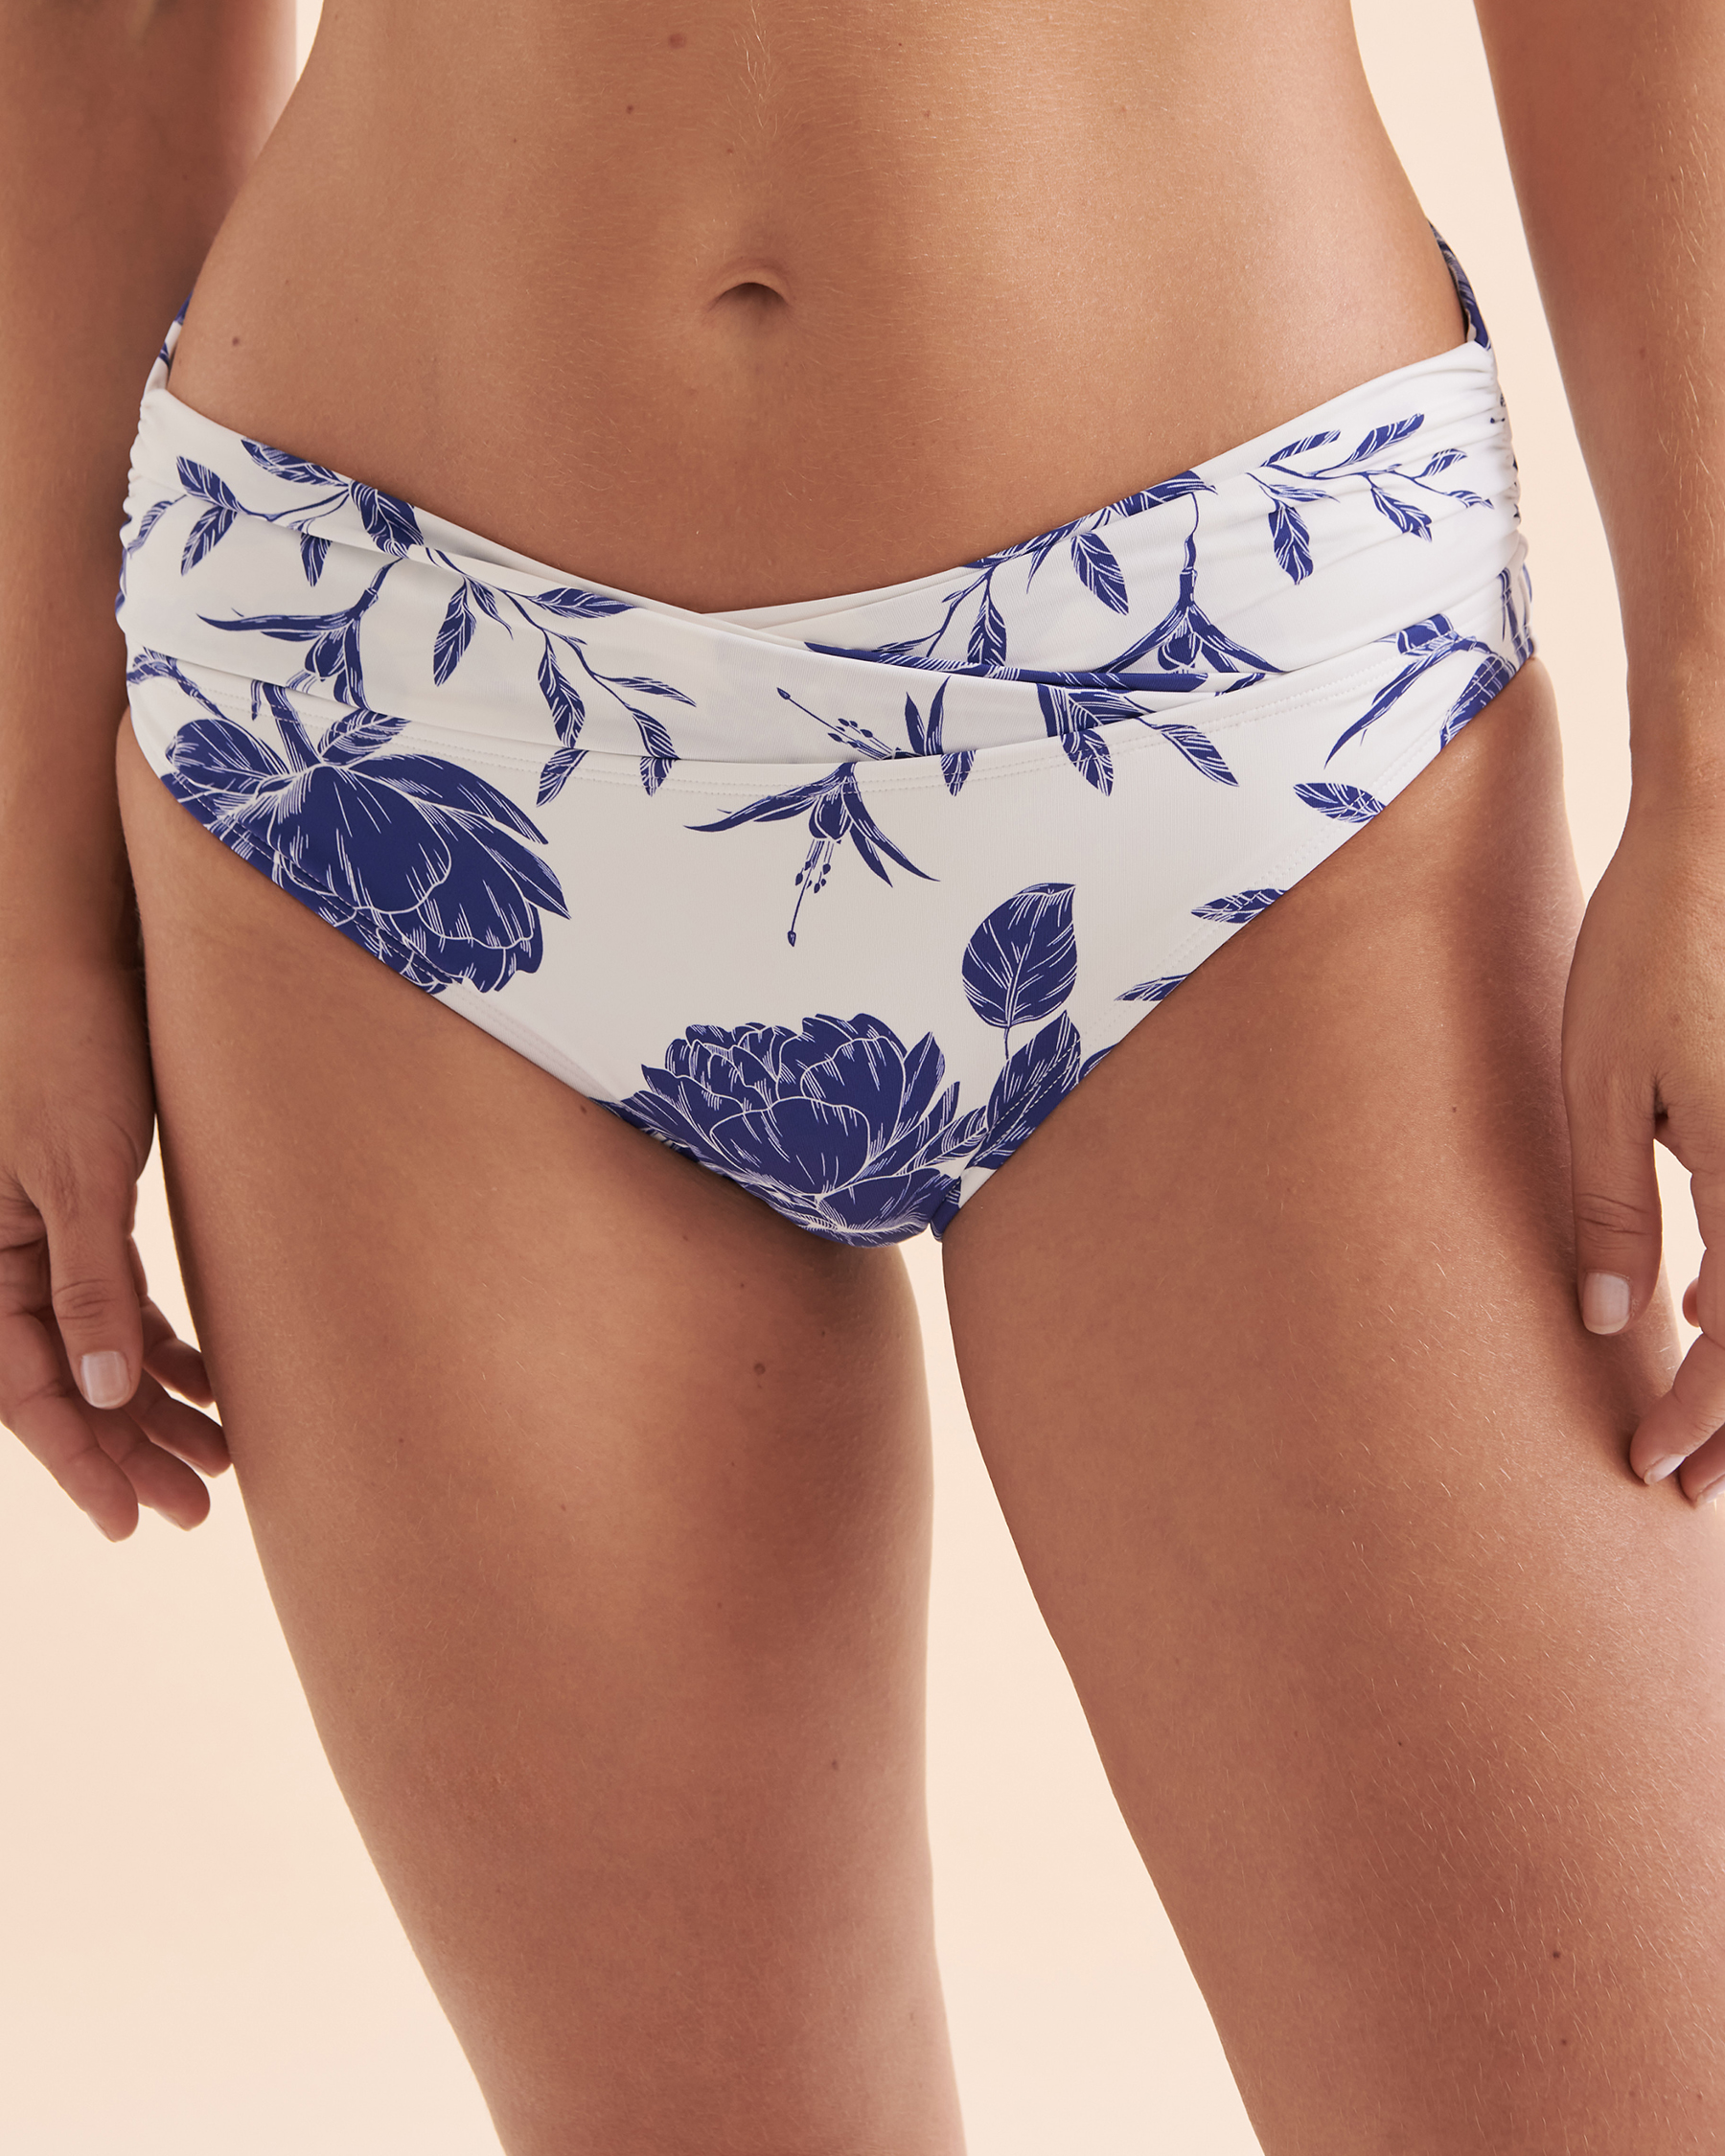 TURQUOISE COUTURE Bas de bikini bande de taille pliée Floral Fleurs bleues et blanches 01300271 - Voir2